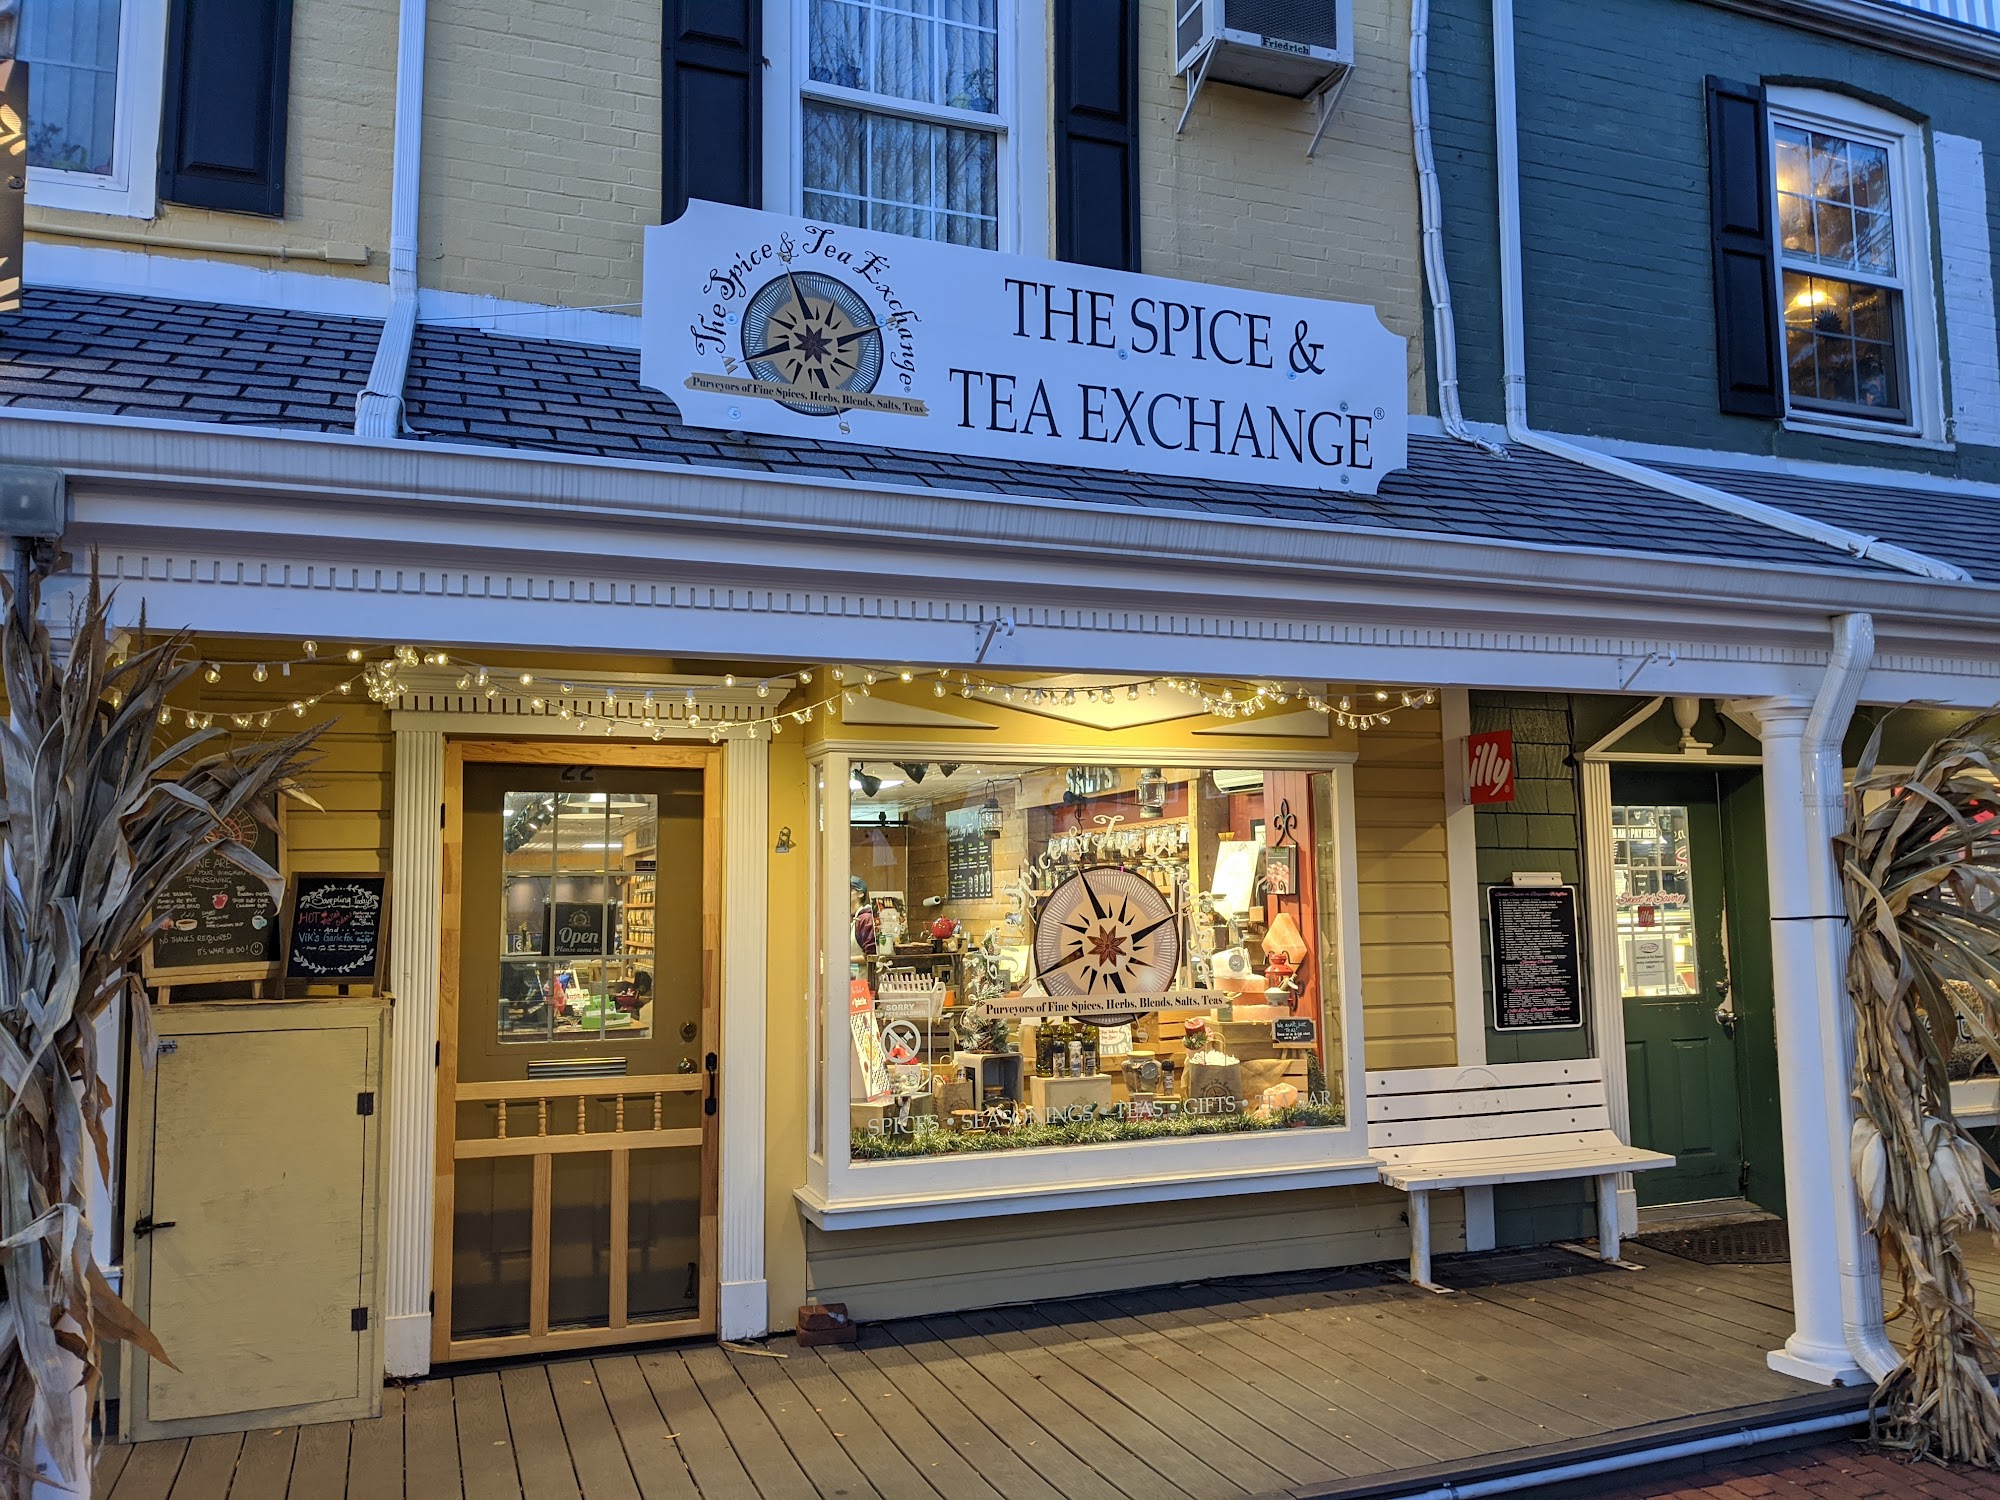 The Spice & Tea Exchange of Port Jefferson